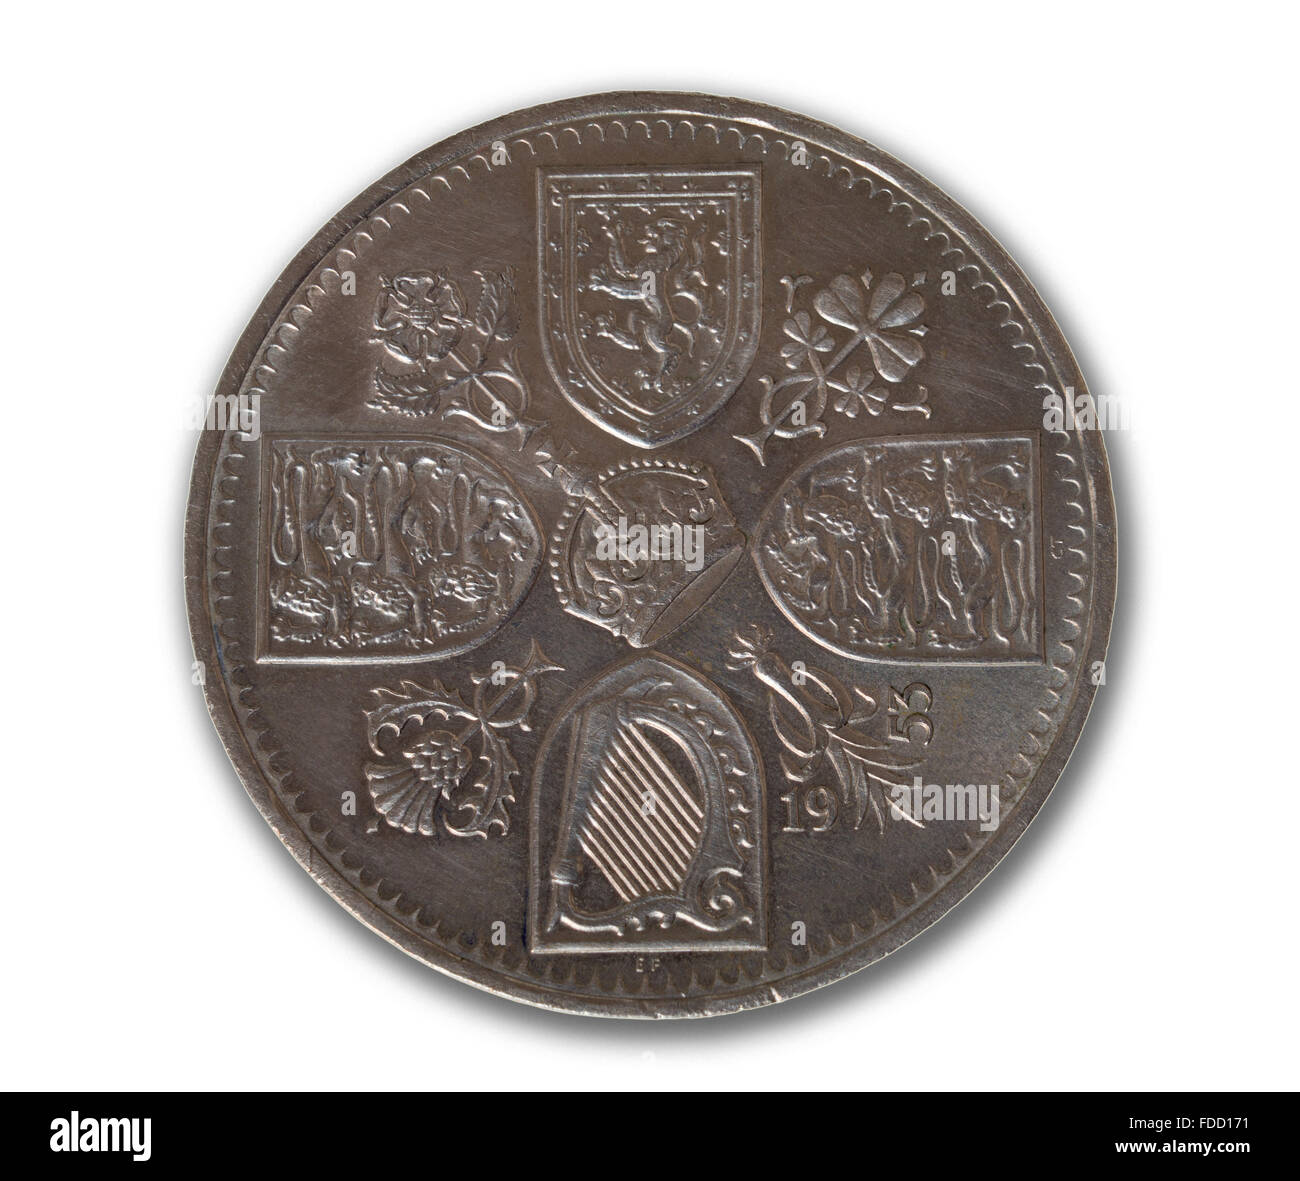 1953 cinco chelines moneda o corona en el centro de una cruz compuesta de los escudos de Inglaterra, Escocia, Gales e Irlanda Foto de stock